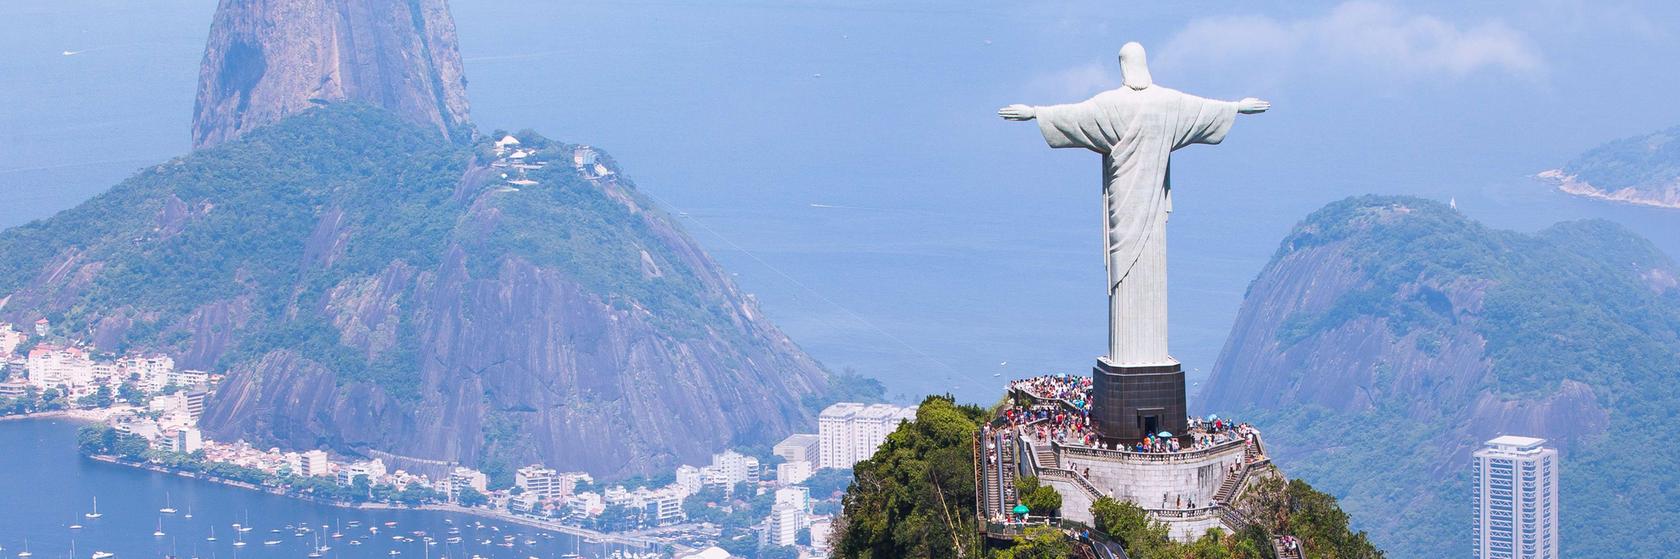 Tipy na výlety Rio de Janeiru a okolí